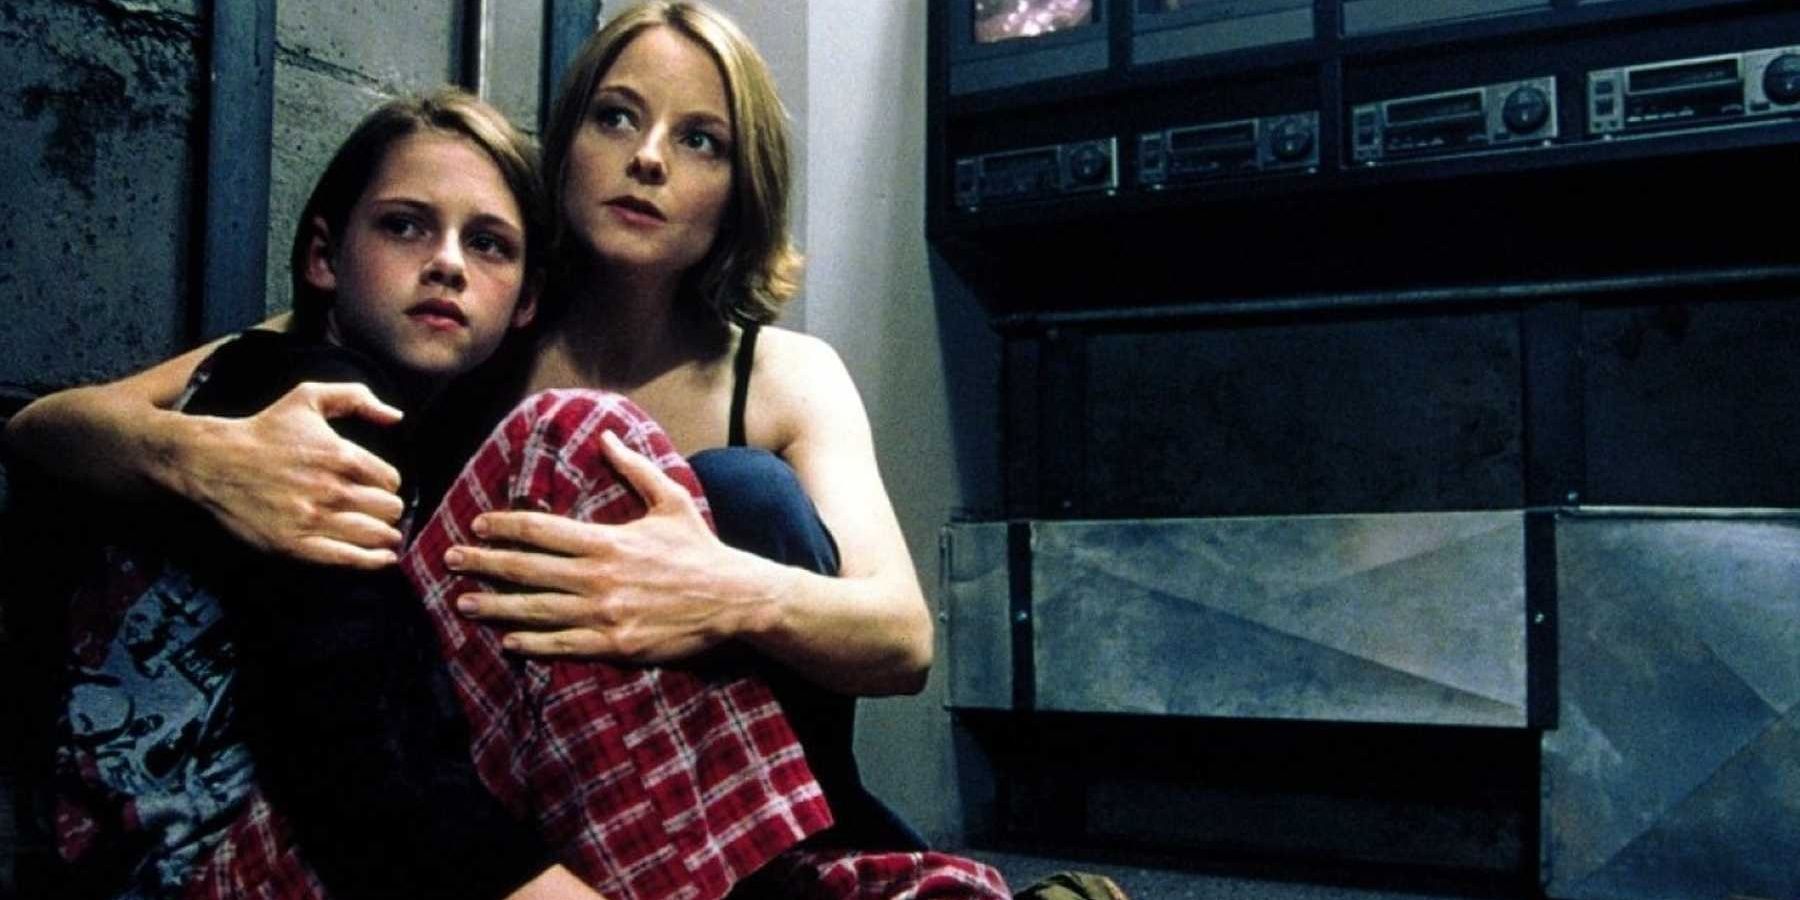 Kristen Stewart’s 10 Best Movies, According To Ranker